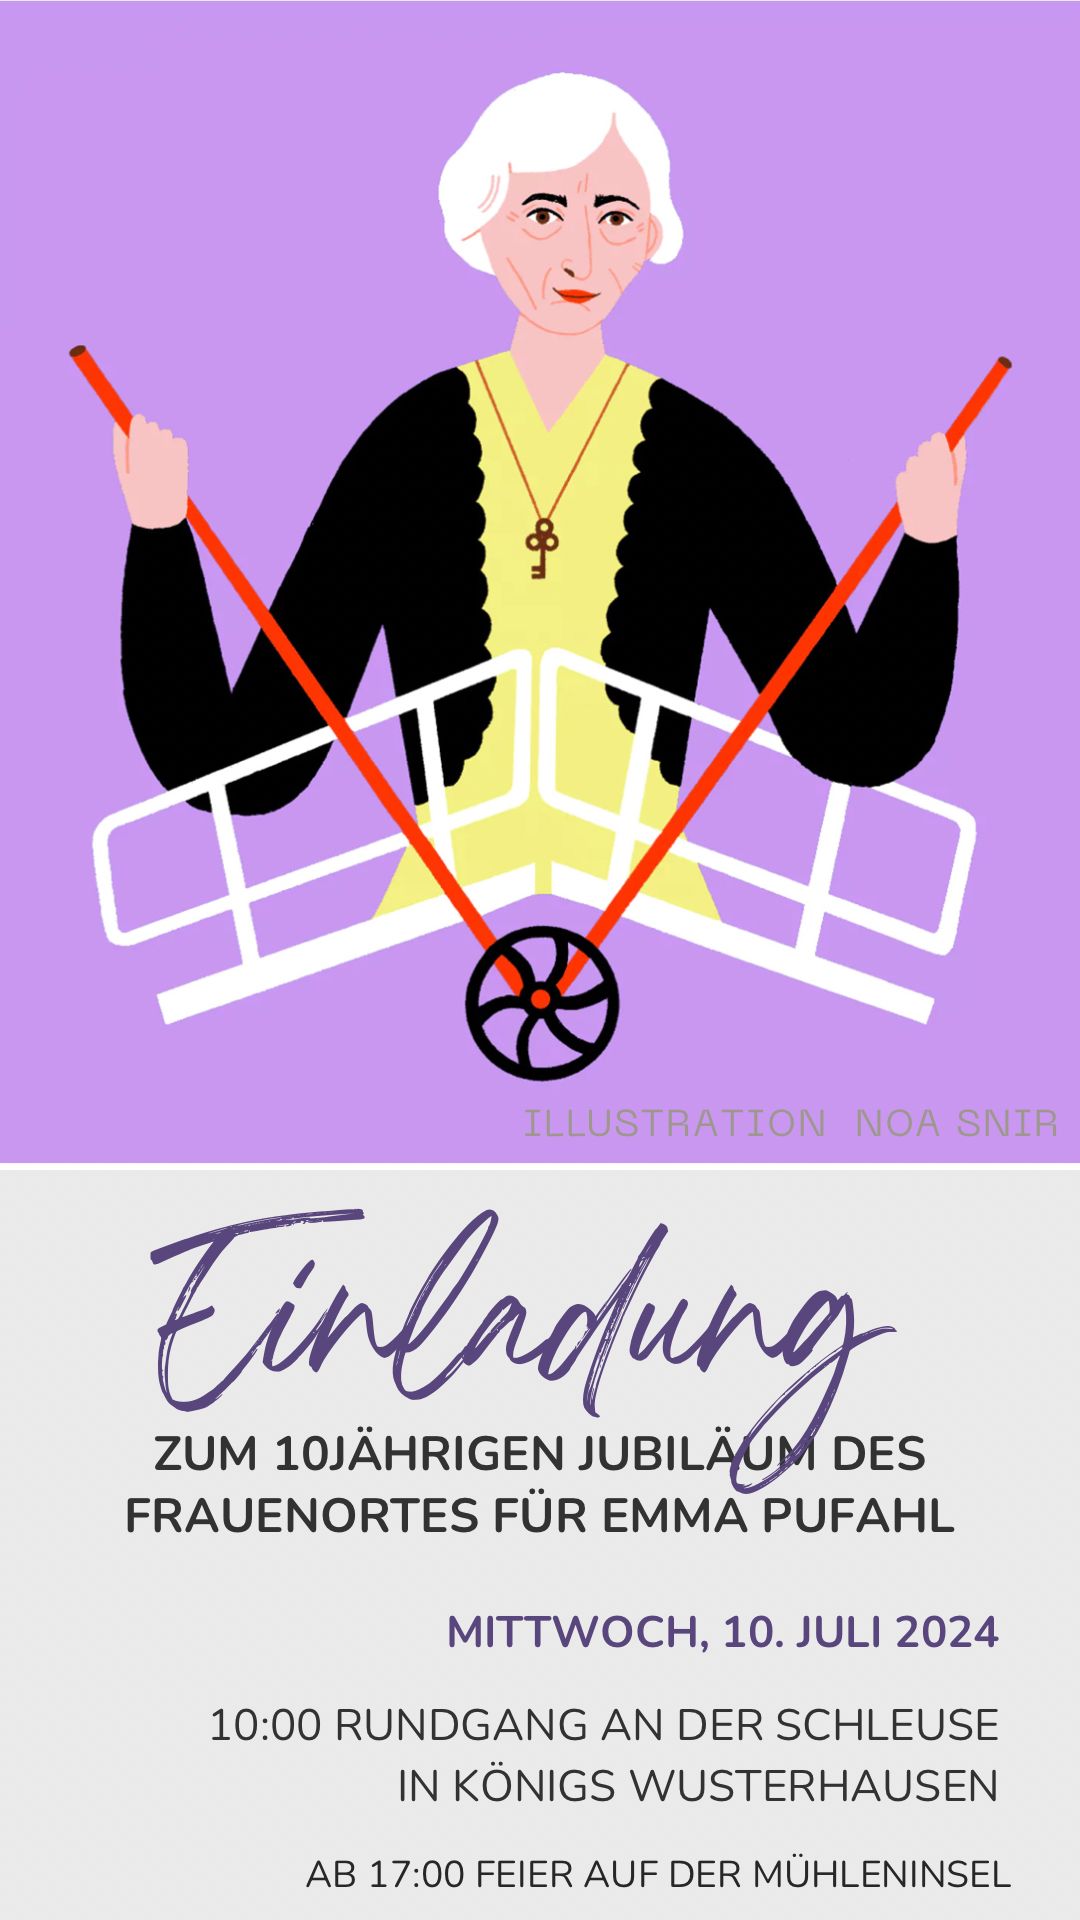 Einladung zur Jubiläumsfeier für den FrauenOrt Emma Pufahl am 10.07. in Königs Wusterhausen